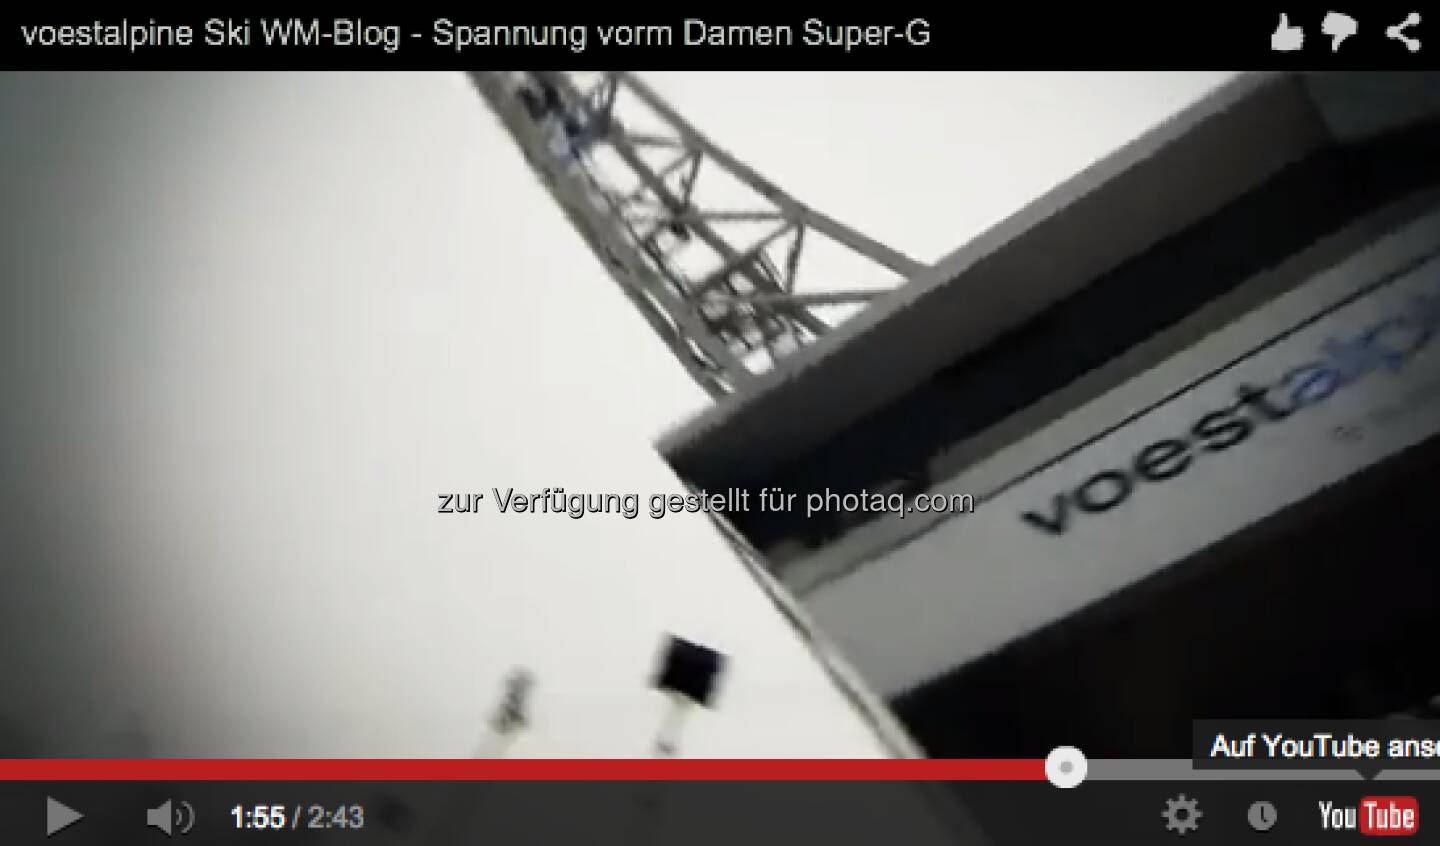 Video vor dem Damen Super G http://voestalpine-wm-blog.at/2013/02/05/voestalpine-ski-wm-blog-spannung-vorm-damen-super-g/#.UREkio7aK_Q